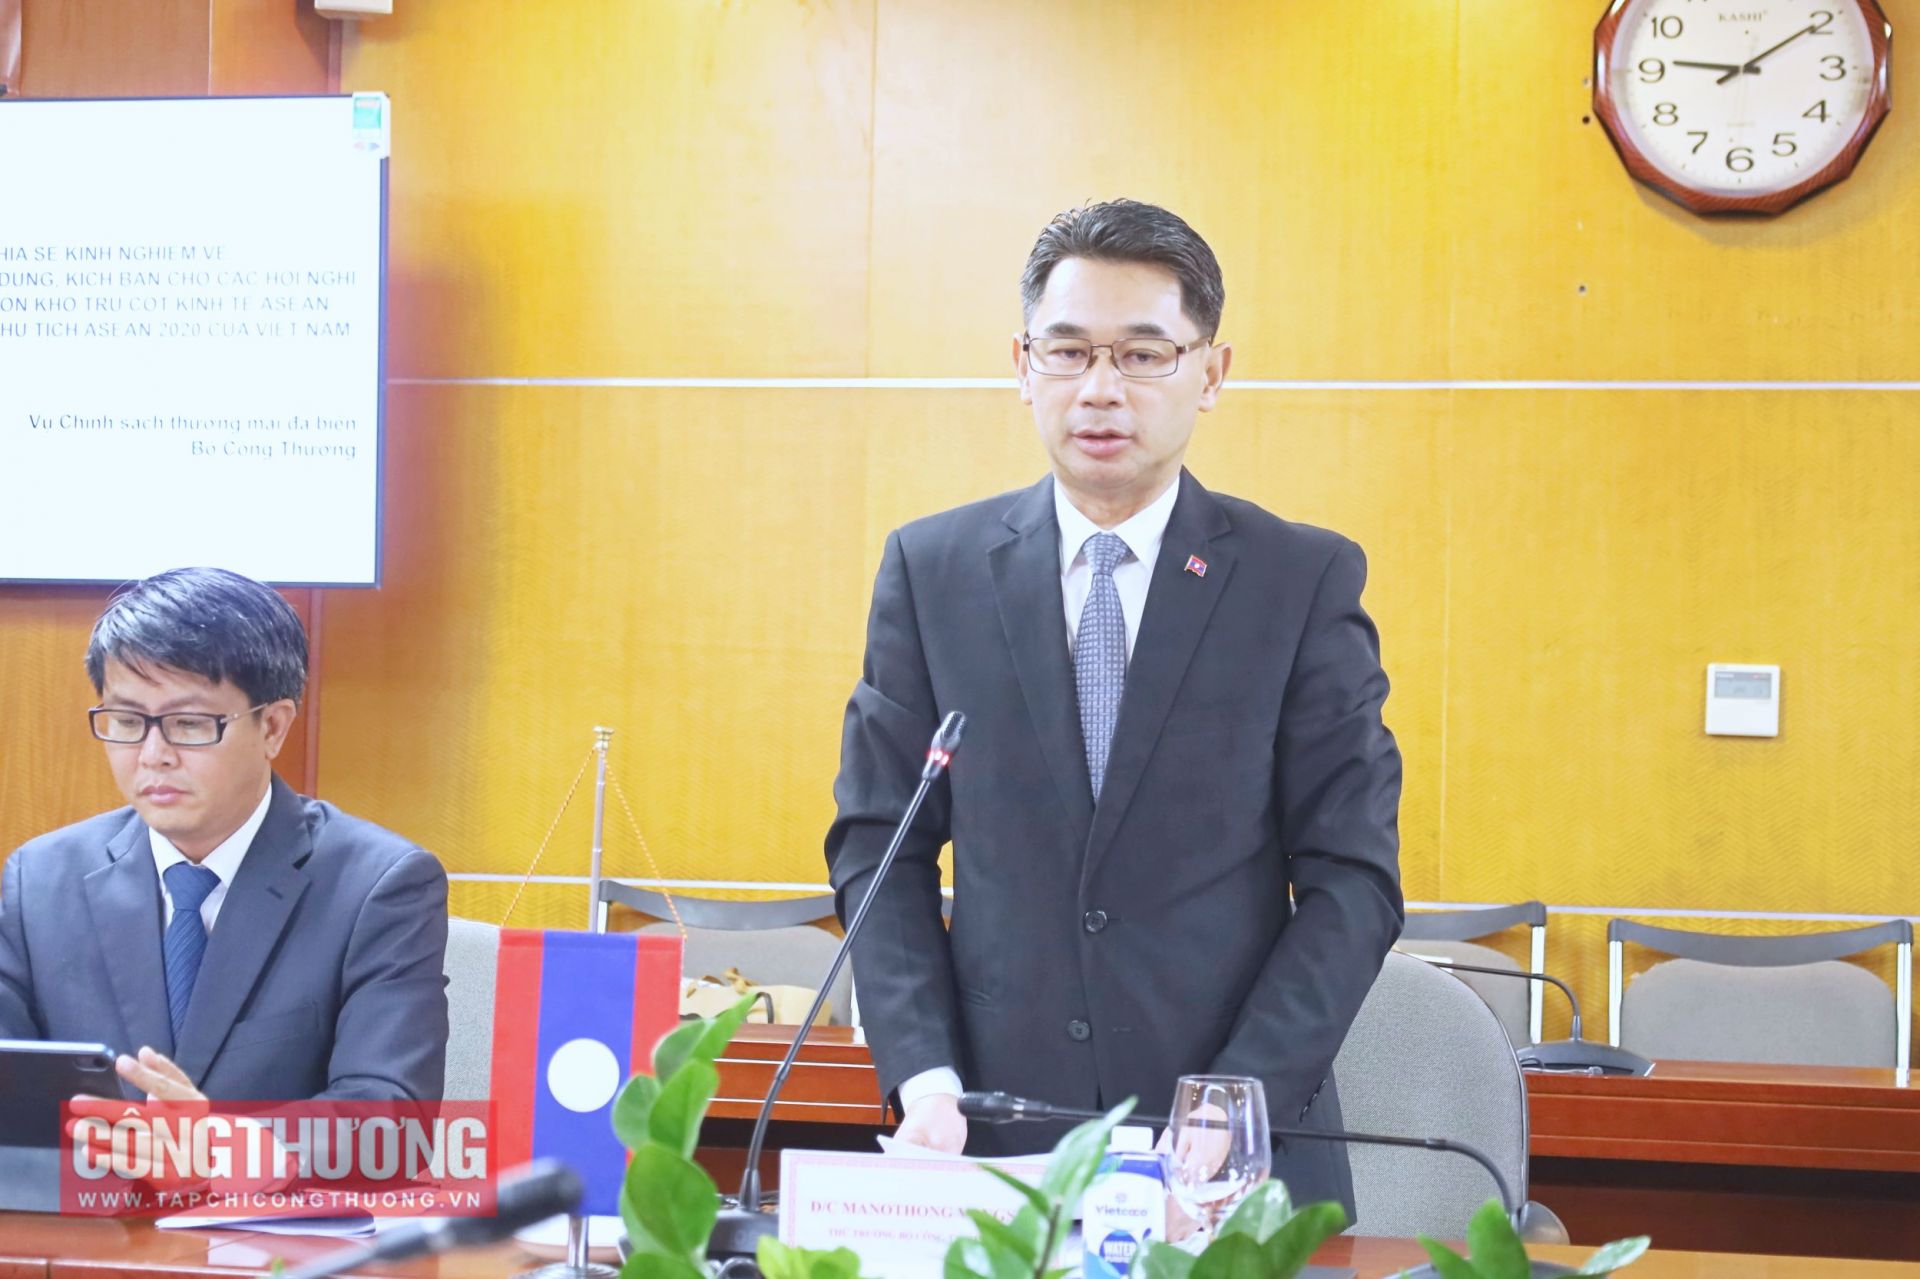 Thứ trưởng Nguyễn Sinh Nhật Tân tiếp đoàn Bộ Công Thương Lào